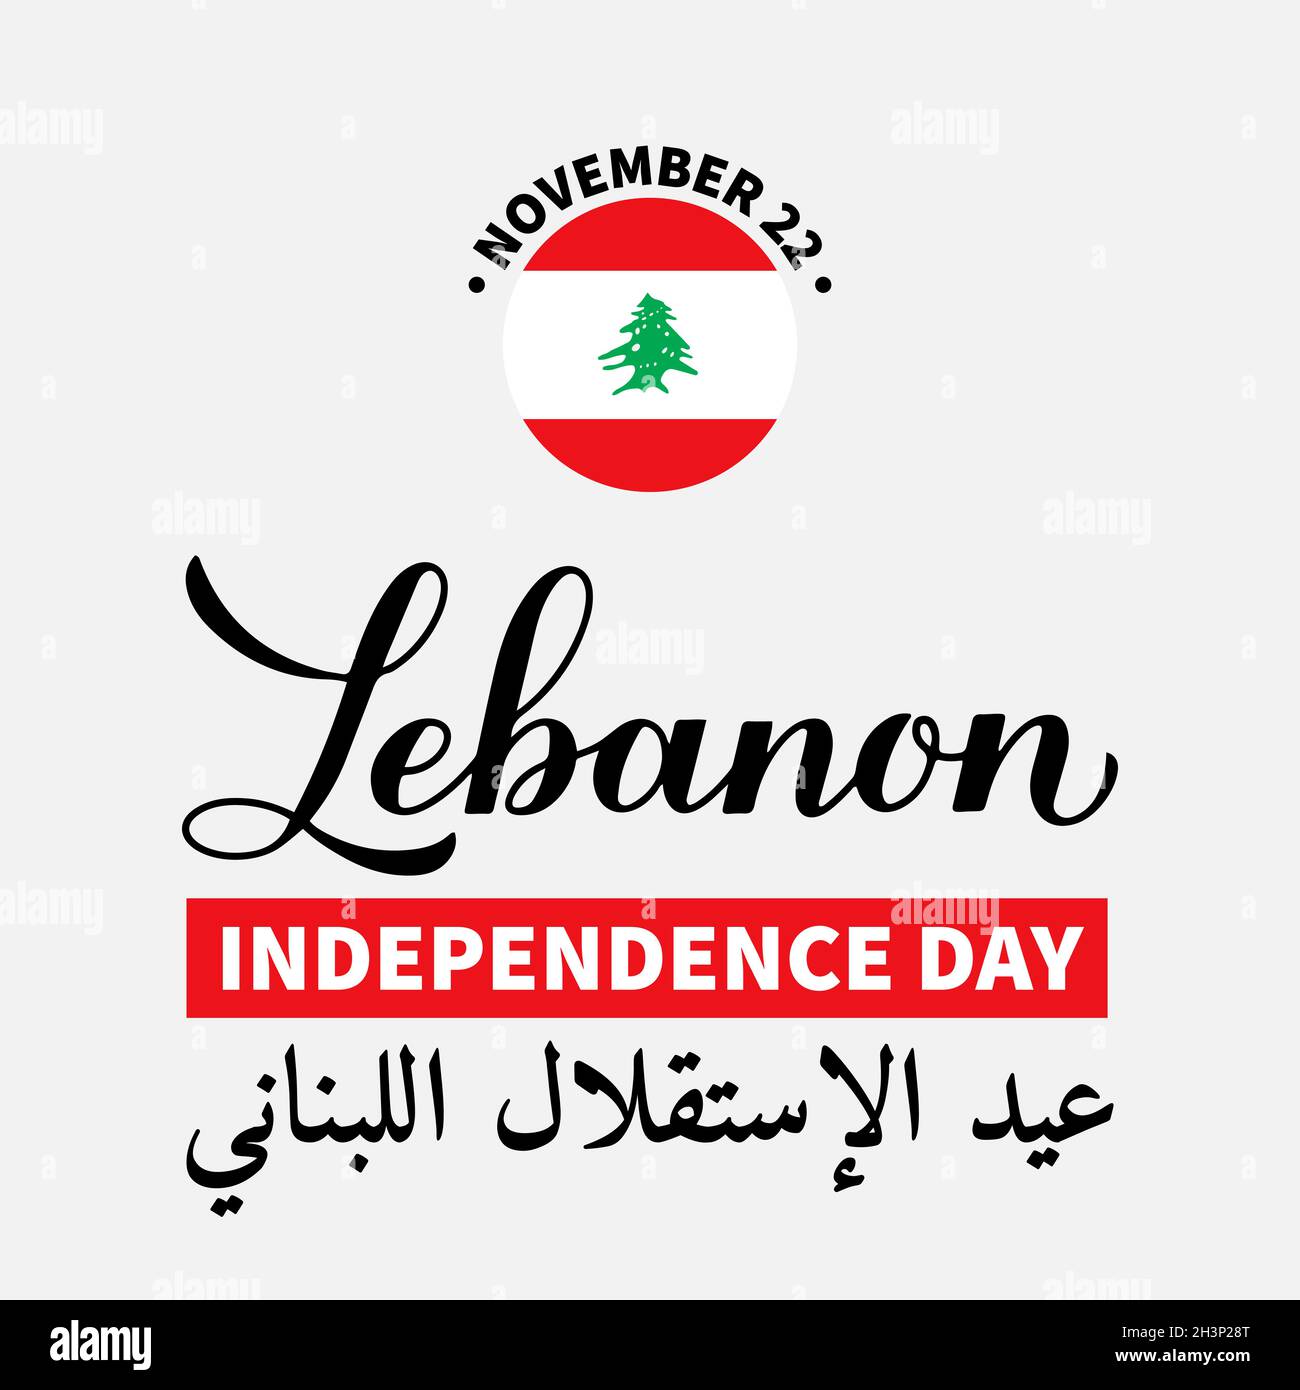 Affiche typographique de la Journée de l'indépendance du Liban en anglais et en arabe.Fête libanaise le 22 novembre.Modèle vectoriel pour bannière, prospectus, sti Illustration de Vecteur